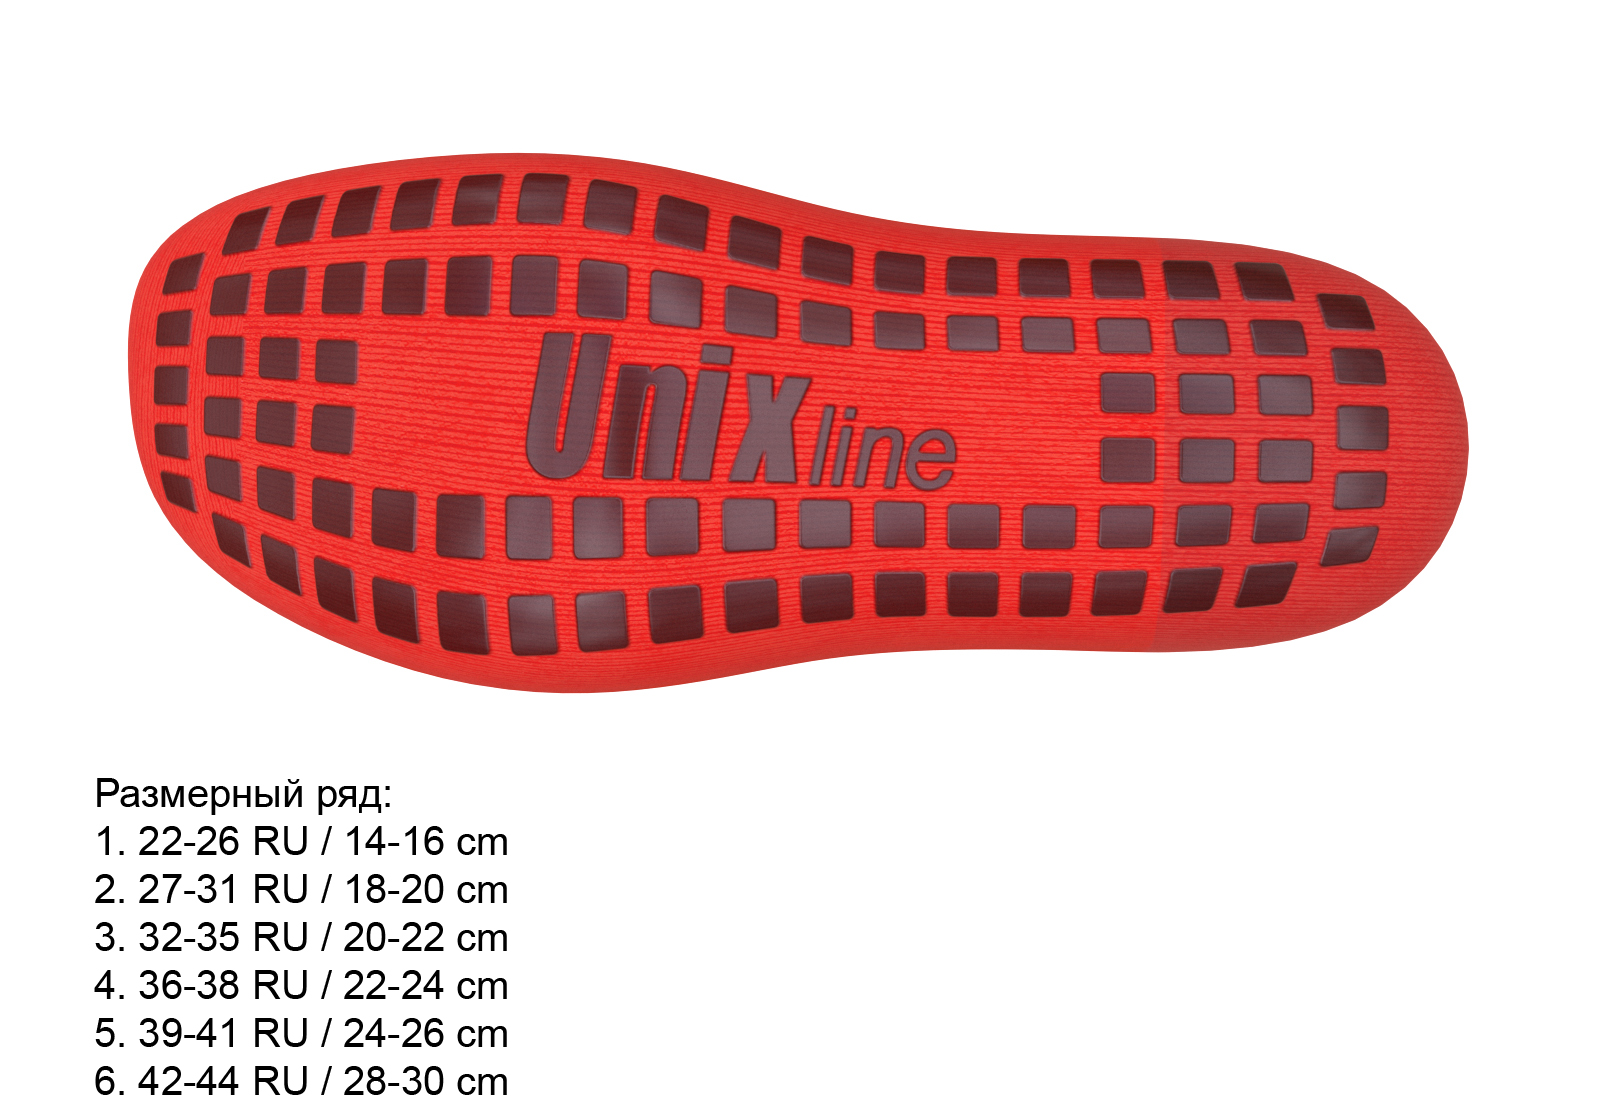 Носки для батута UNIX line (36-38 RU / 22-24 cm)